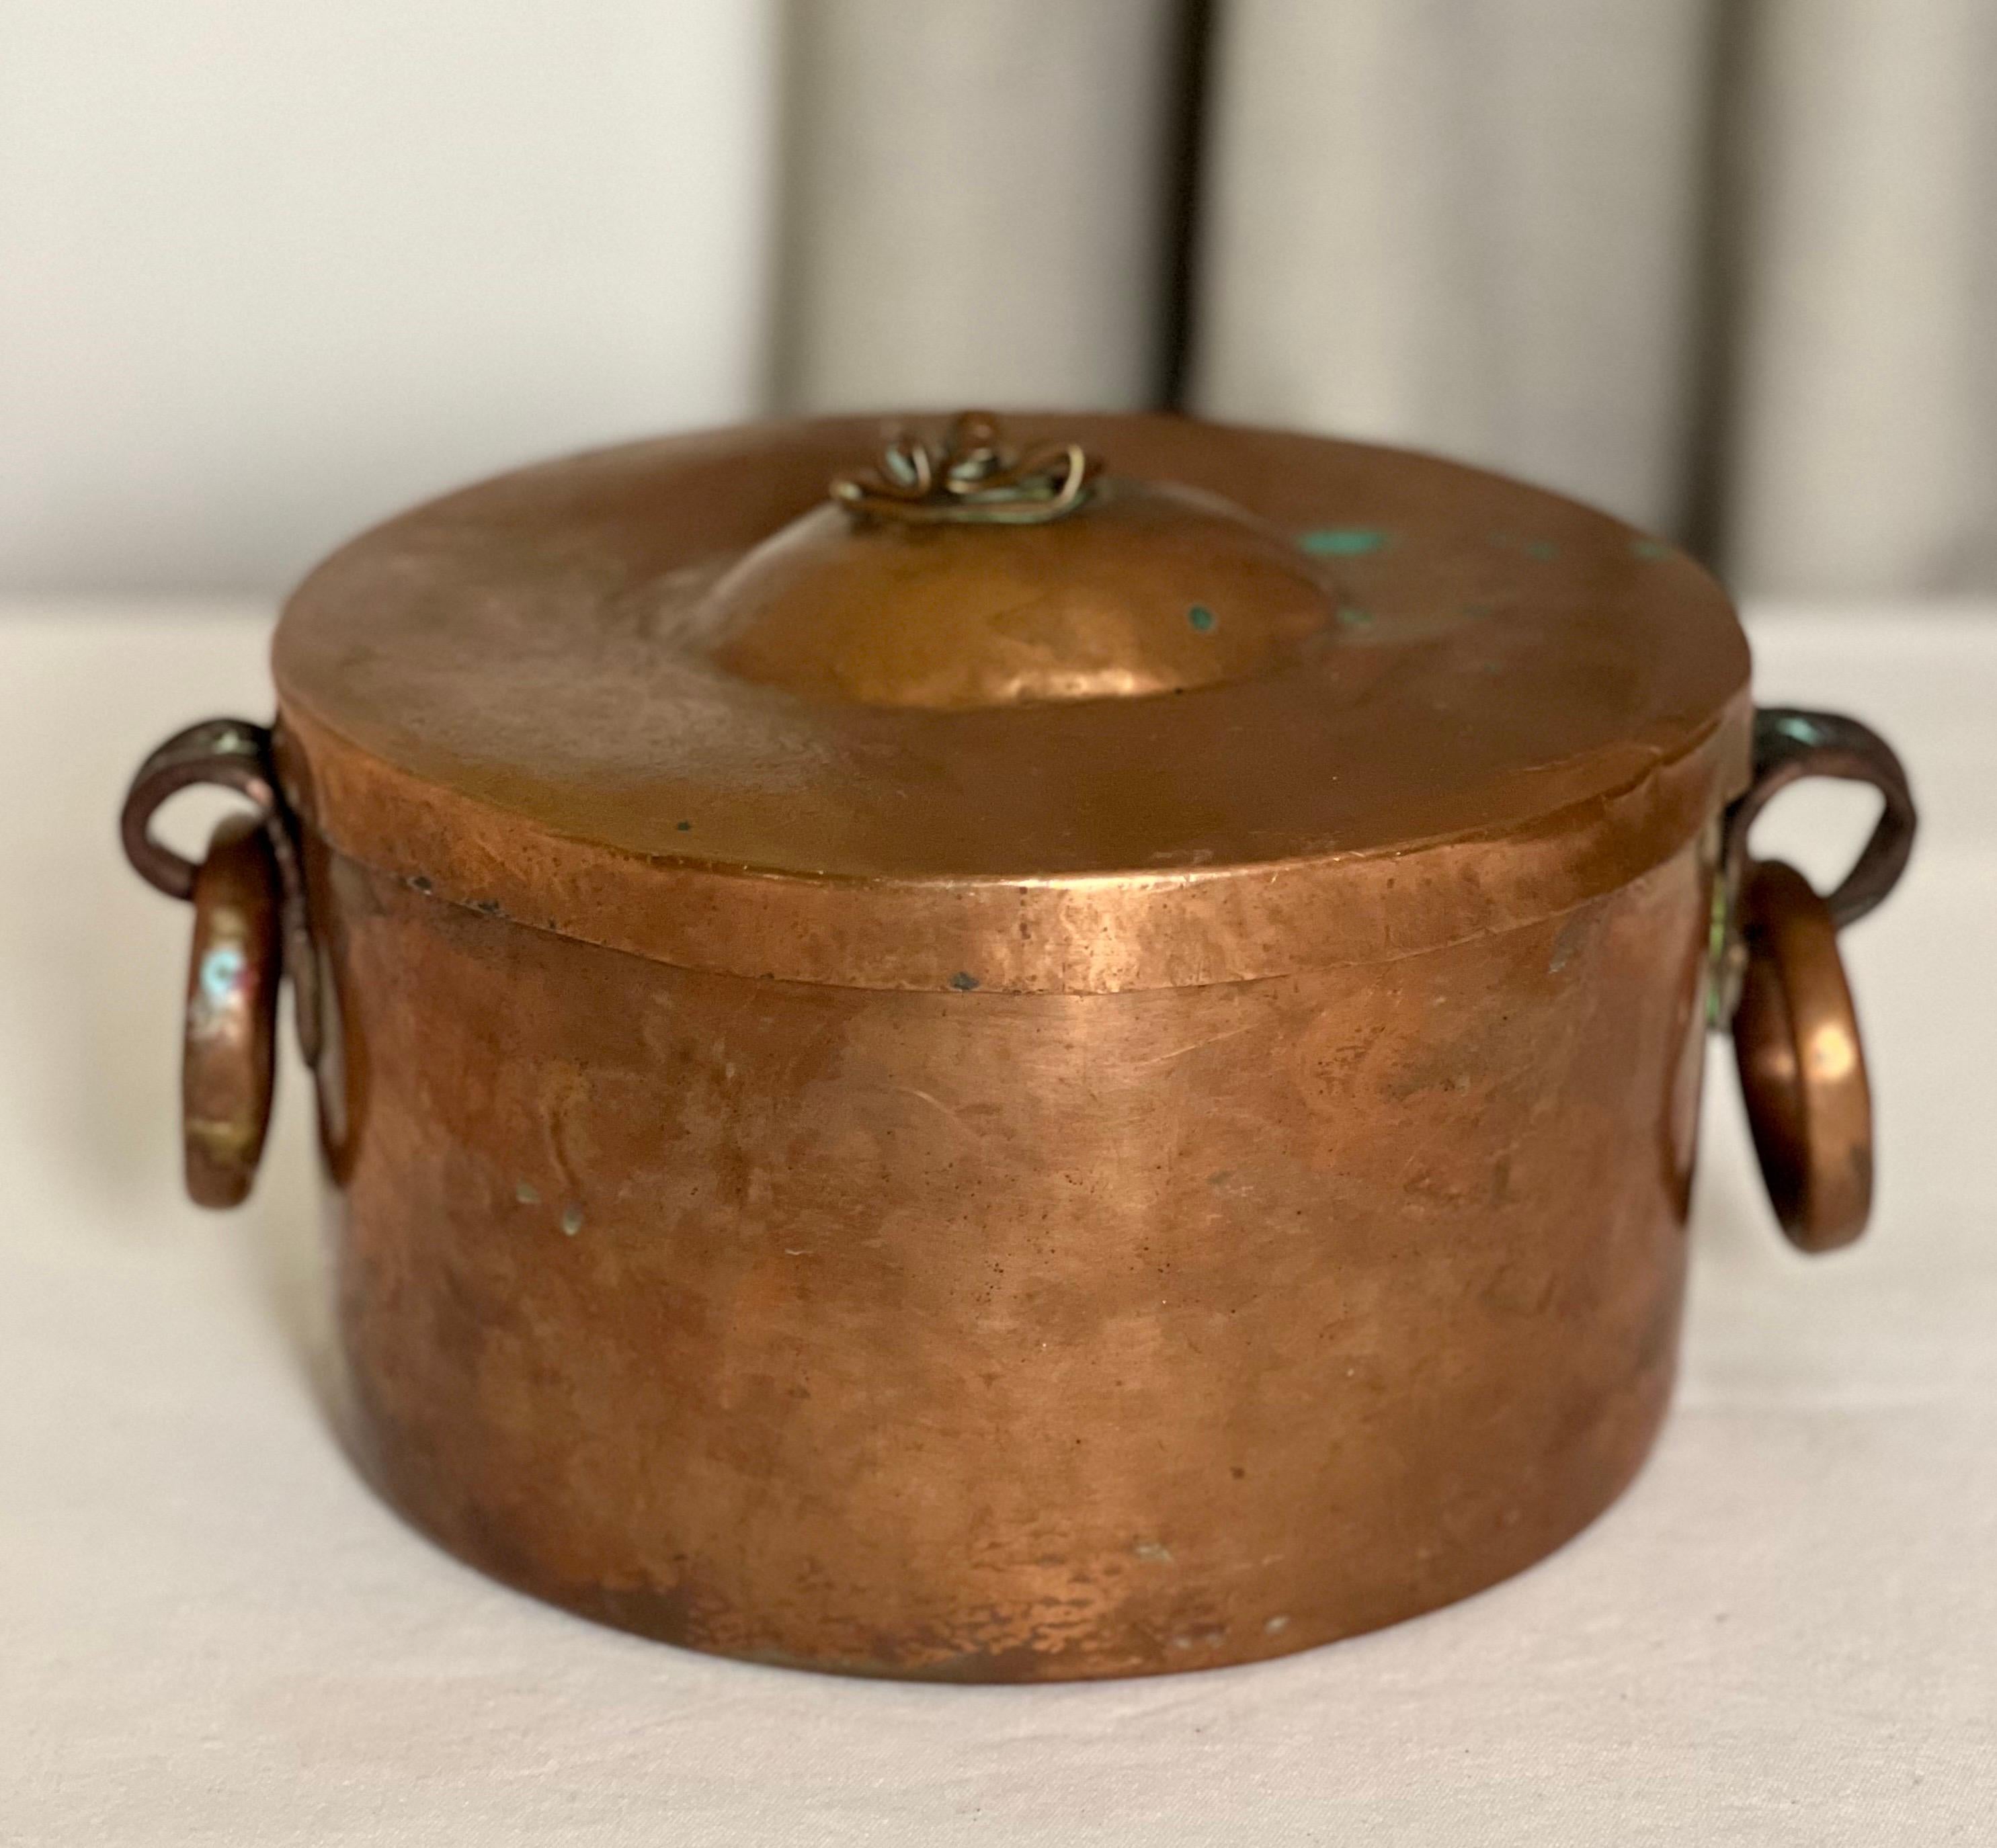 Braisière ou petite marmite en cuivre à queue d'aronde du 19e siècle, avec couvercle ajusté.

Ce pot unique est doté de deux lourdes poignées en cuivre à anneau tombant et de supports à volutes. Un couvercle ajusté est doté d'un charmant bouton